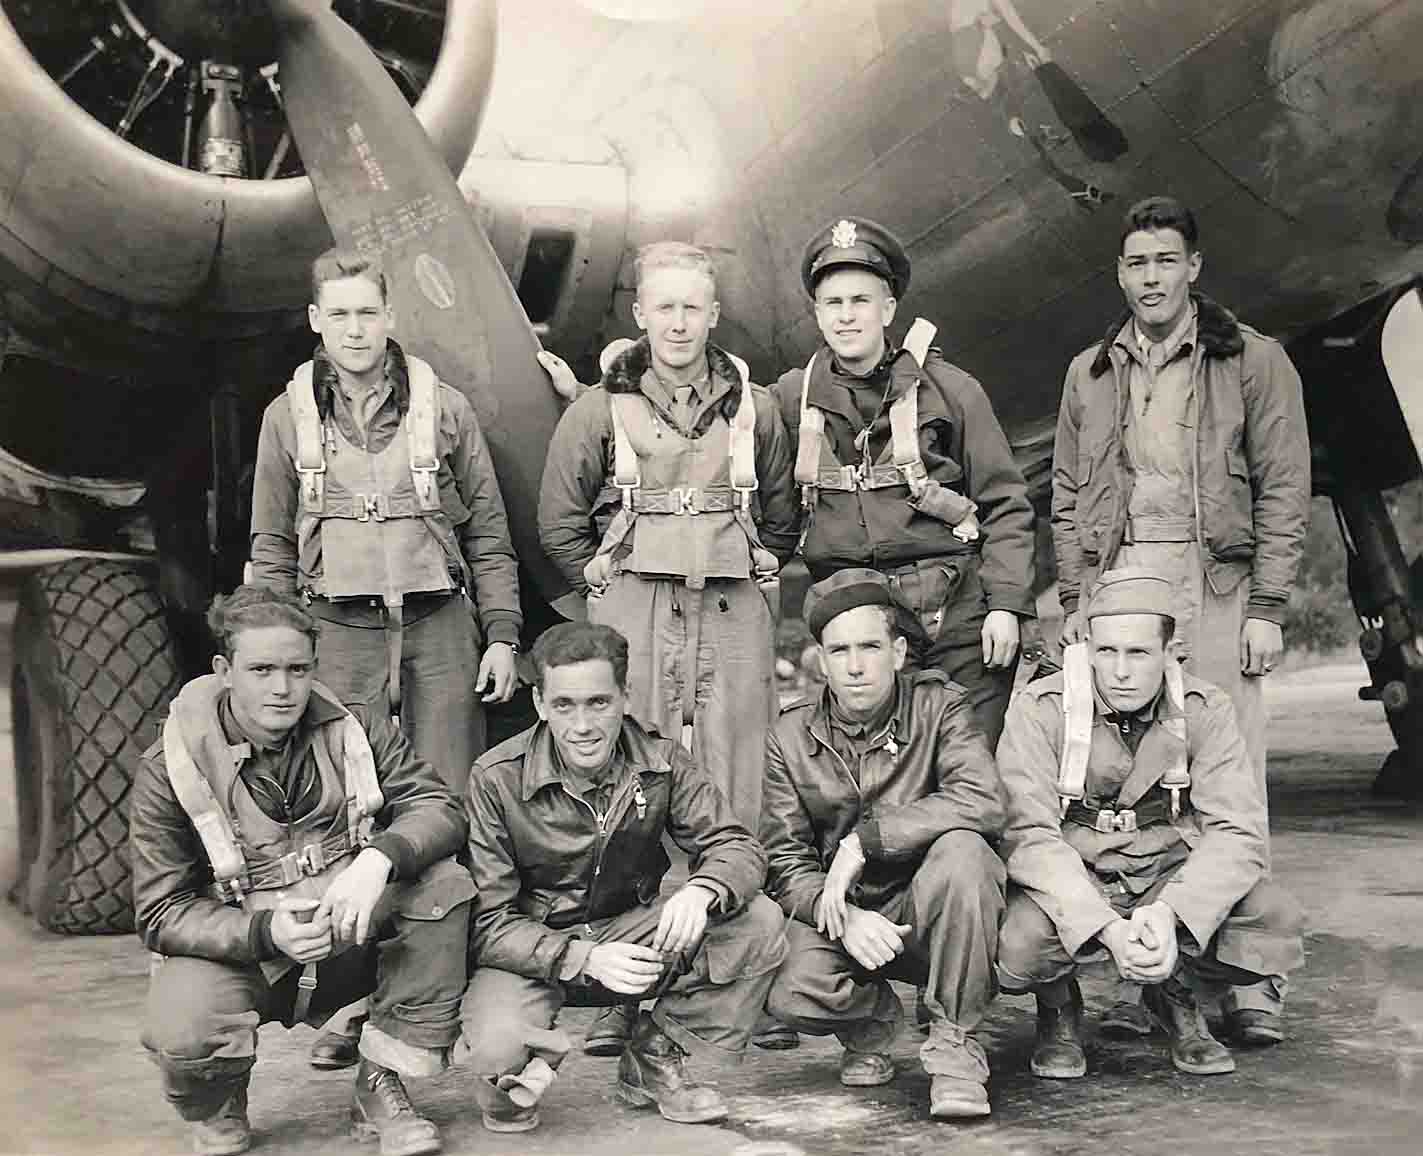 Hunt's Crew - 601st Squadron - September 28, 1944